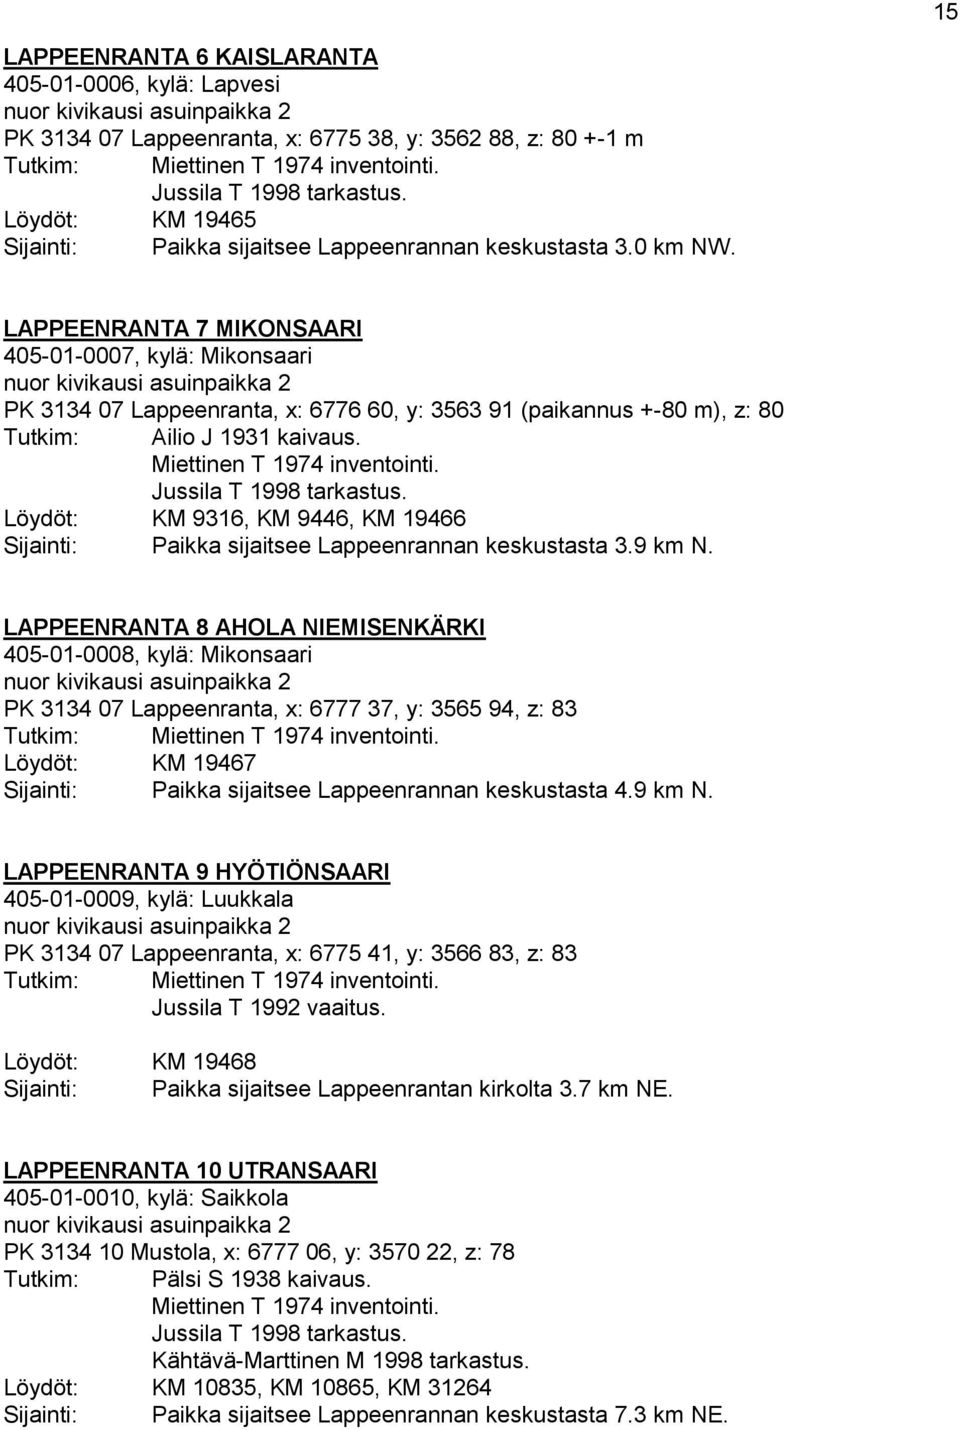 LAPPEENRANTA 7 MIKONSAARI 405-01-0007, kylä: Mikonsaari nuor kivikausi asuinpaikka 2 PK 3134 07 Lappeenranta, x: 6776 60, y: 3563 91 (paikannus +-80 m), z: 80 Ailio J 1931 kaivaus.